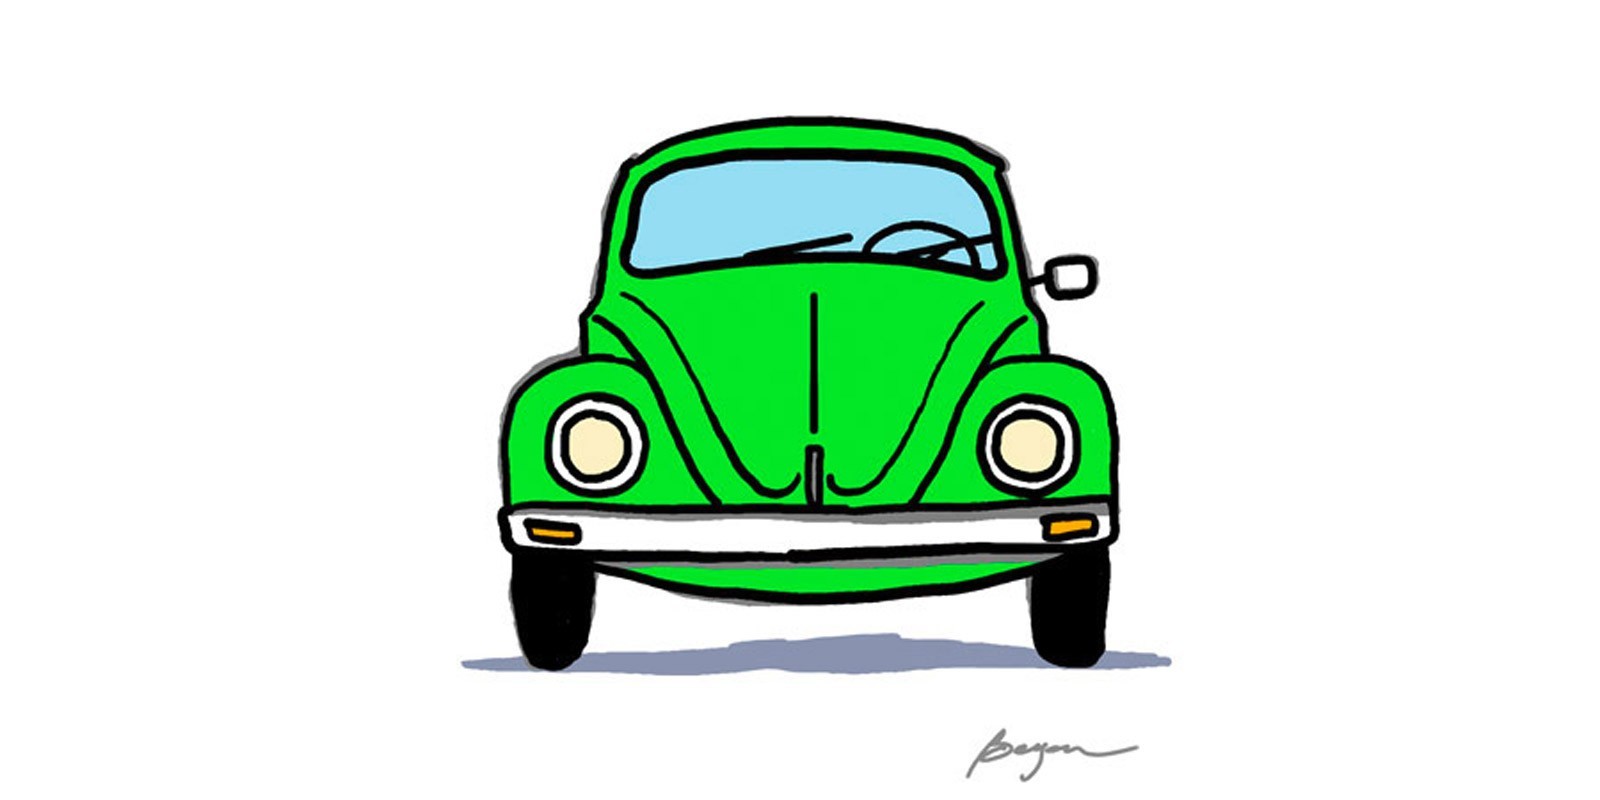 Carlos Beyon - Green Bug